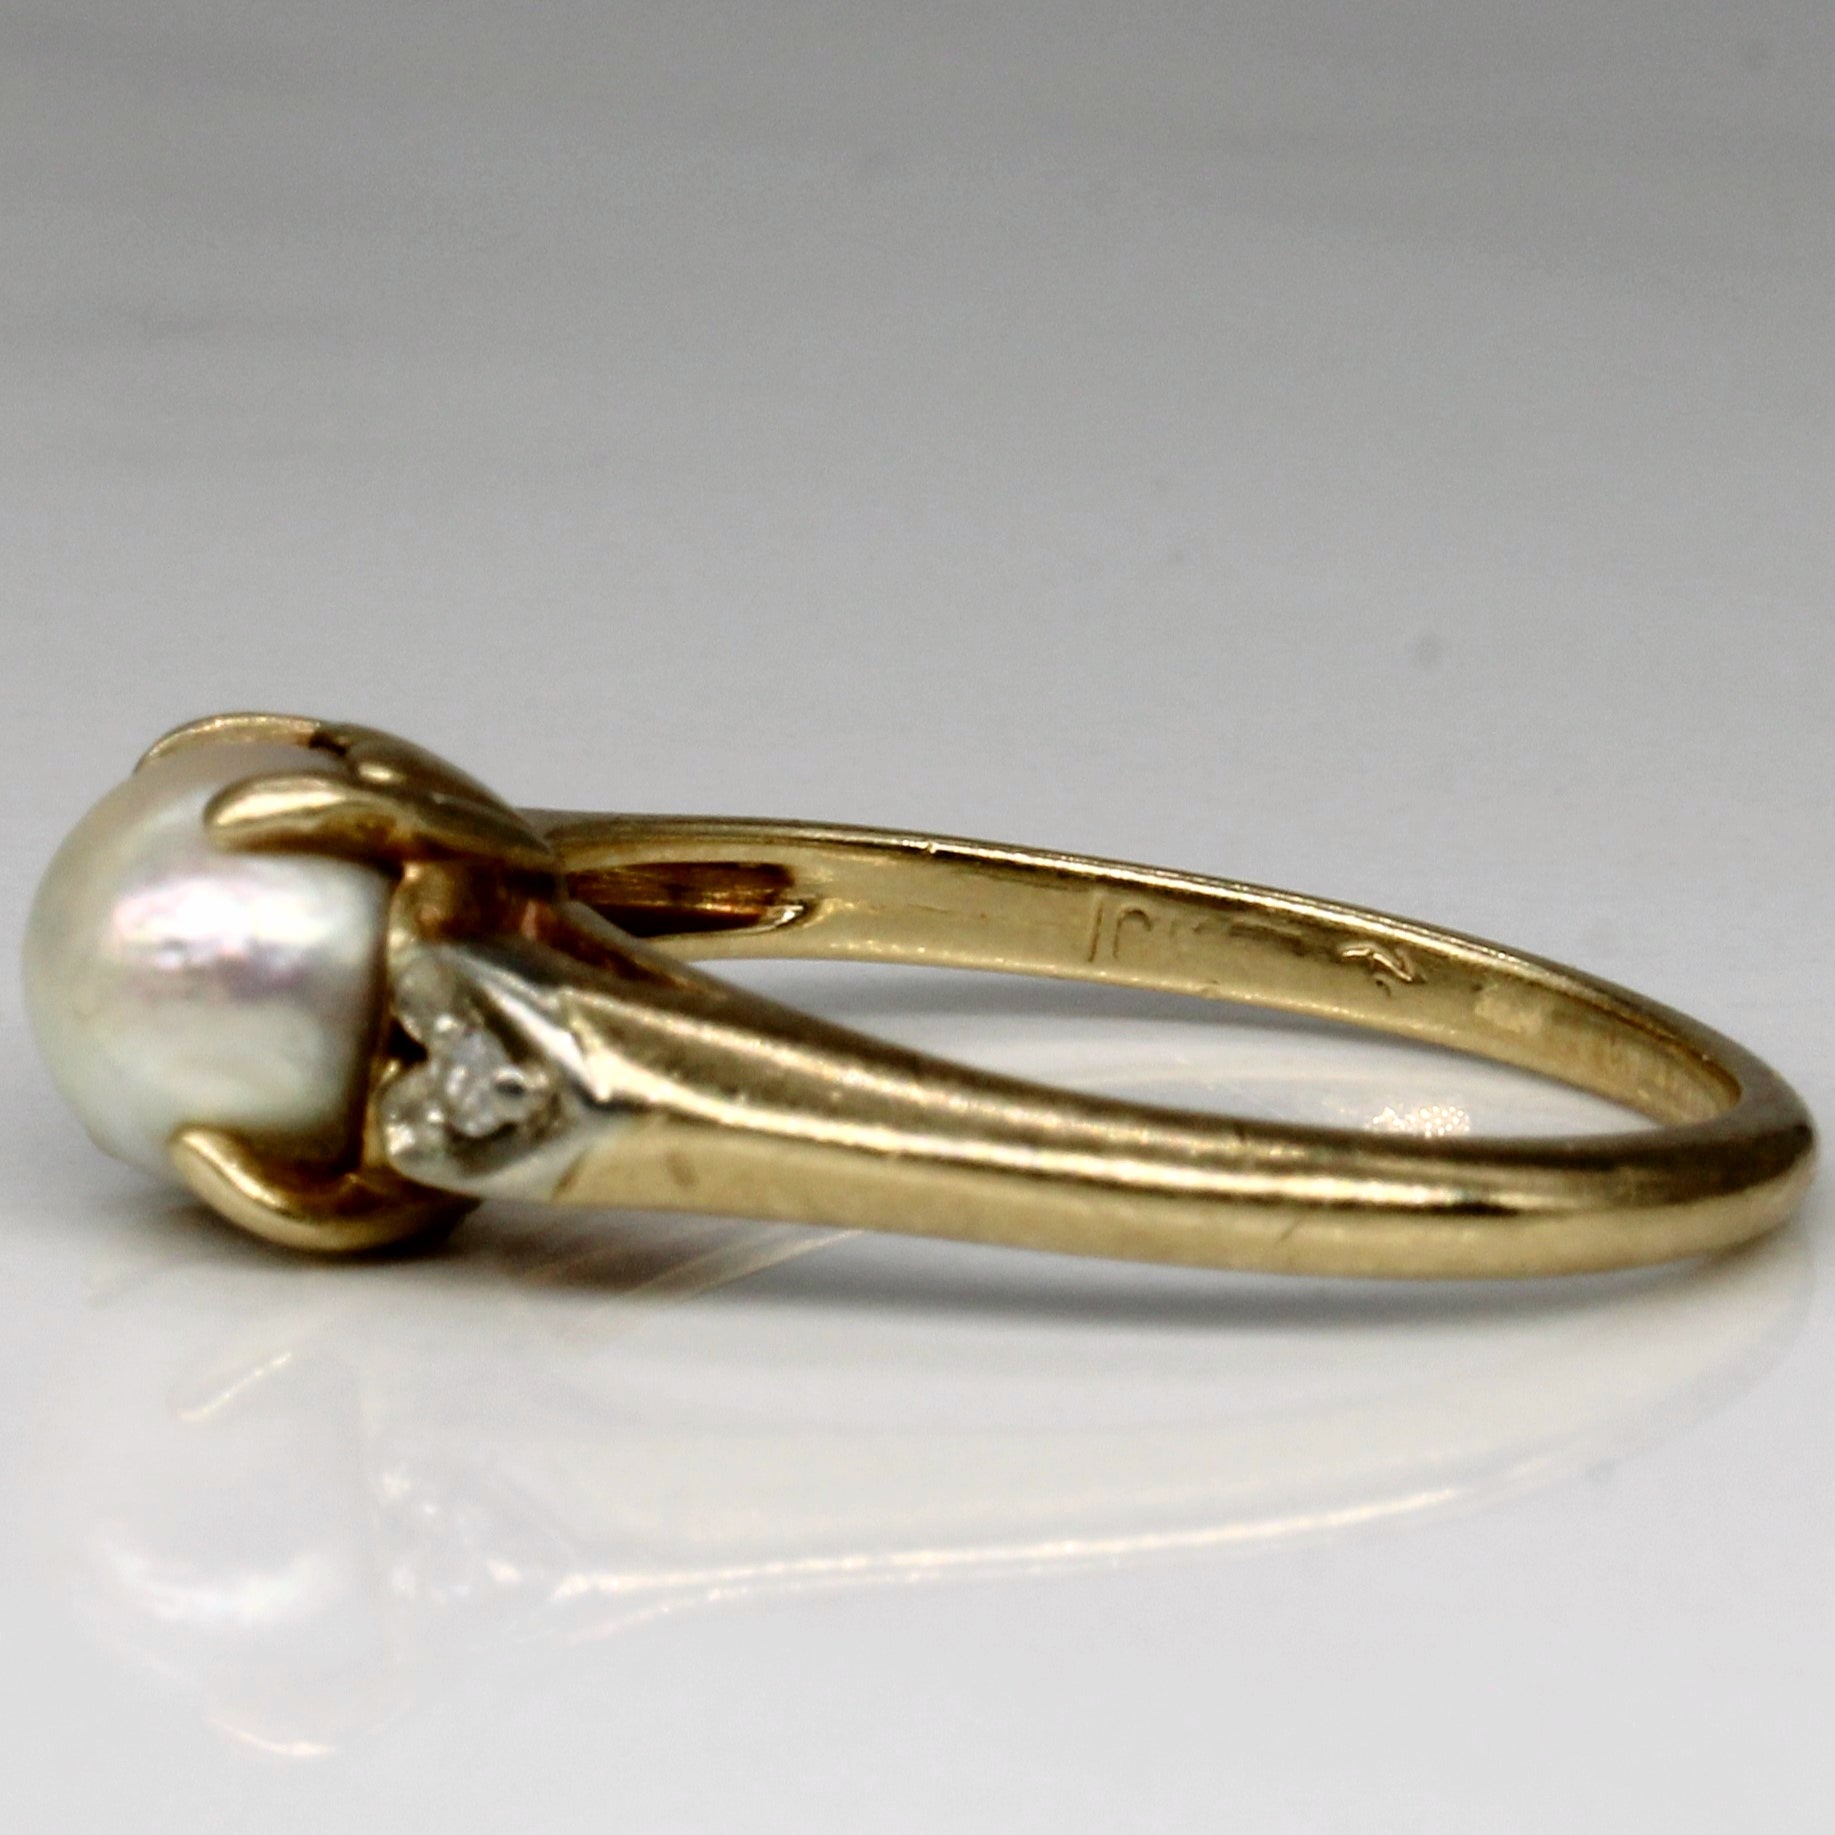 Pearl & Diamond Ring | 0.02ctw | SZ 5.25 |